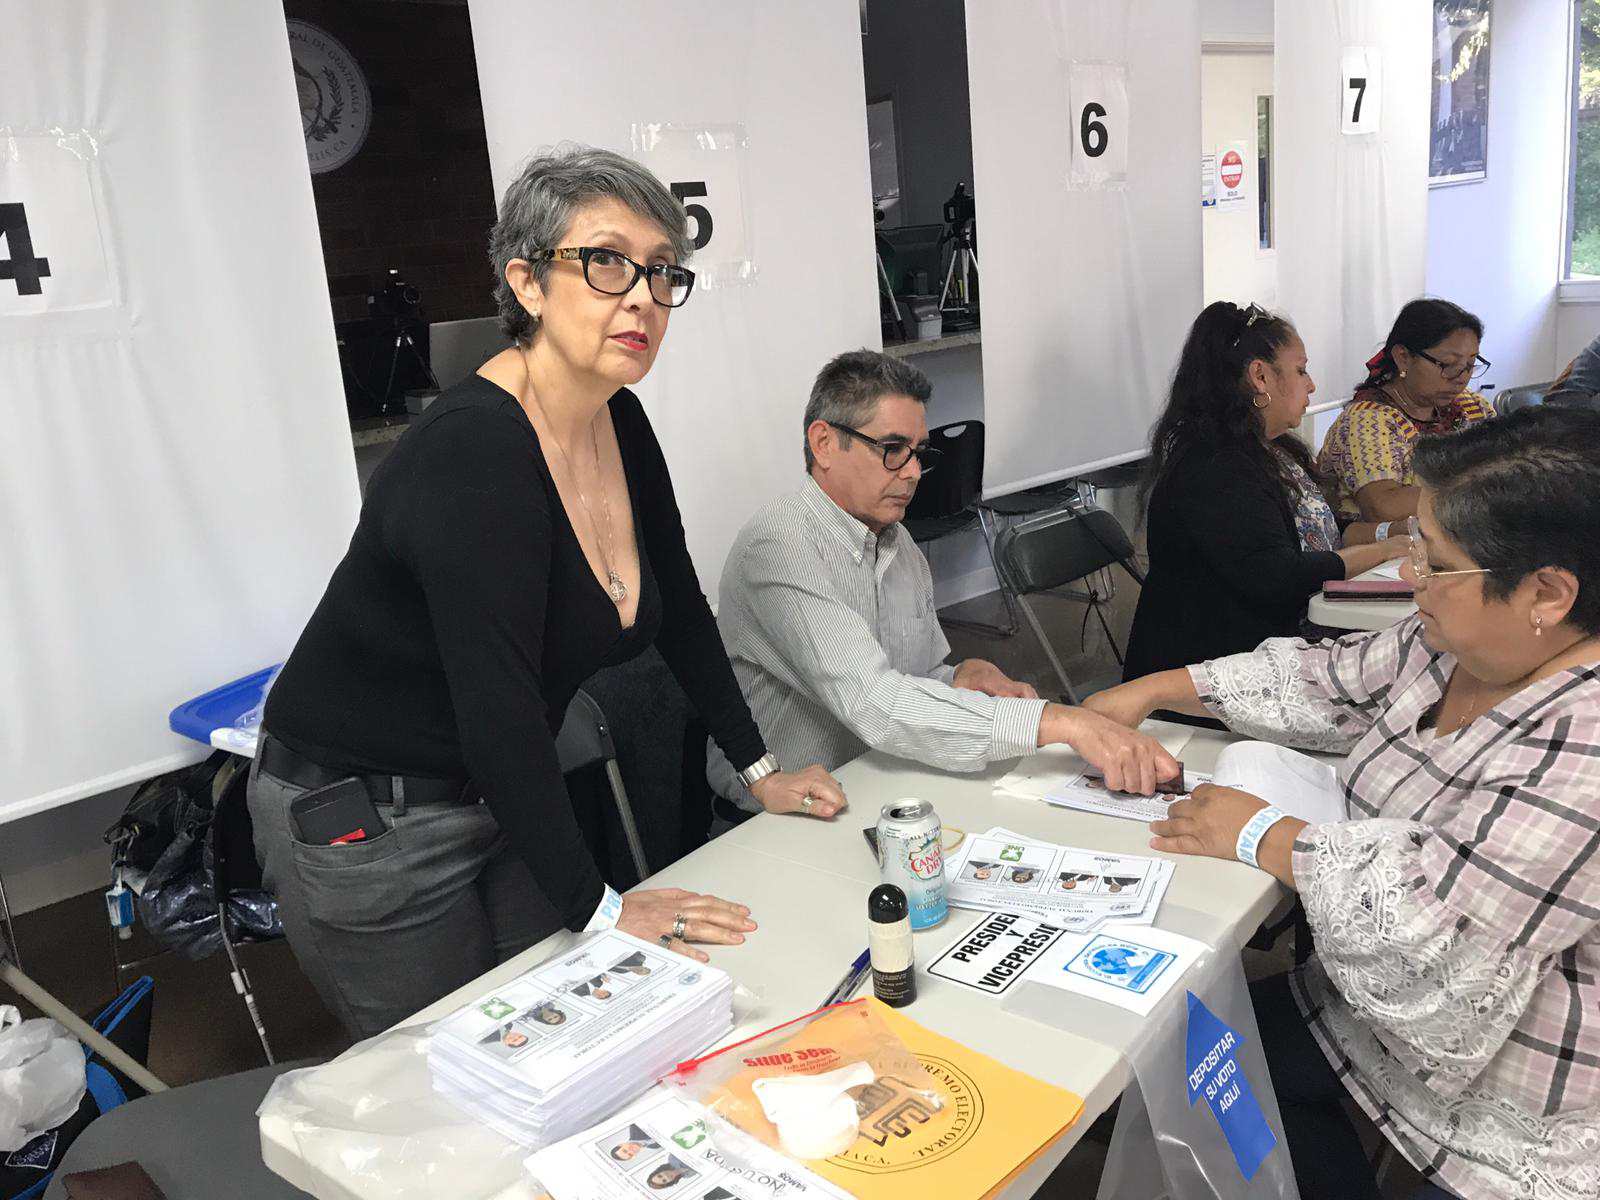 Centro de votación en Los Ángeles, California, durante el proceso electoral de 2019, el primer año en que se habilitó el voto en el extranjero. (Foto Prensa Libre: Hemeroteca)